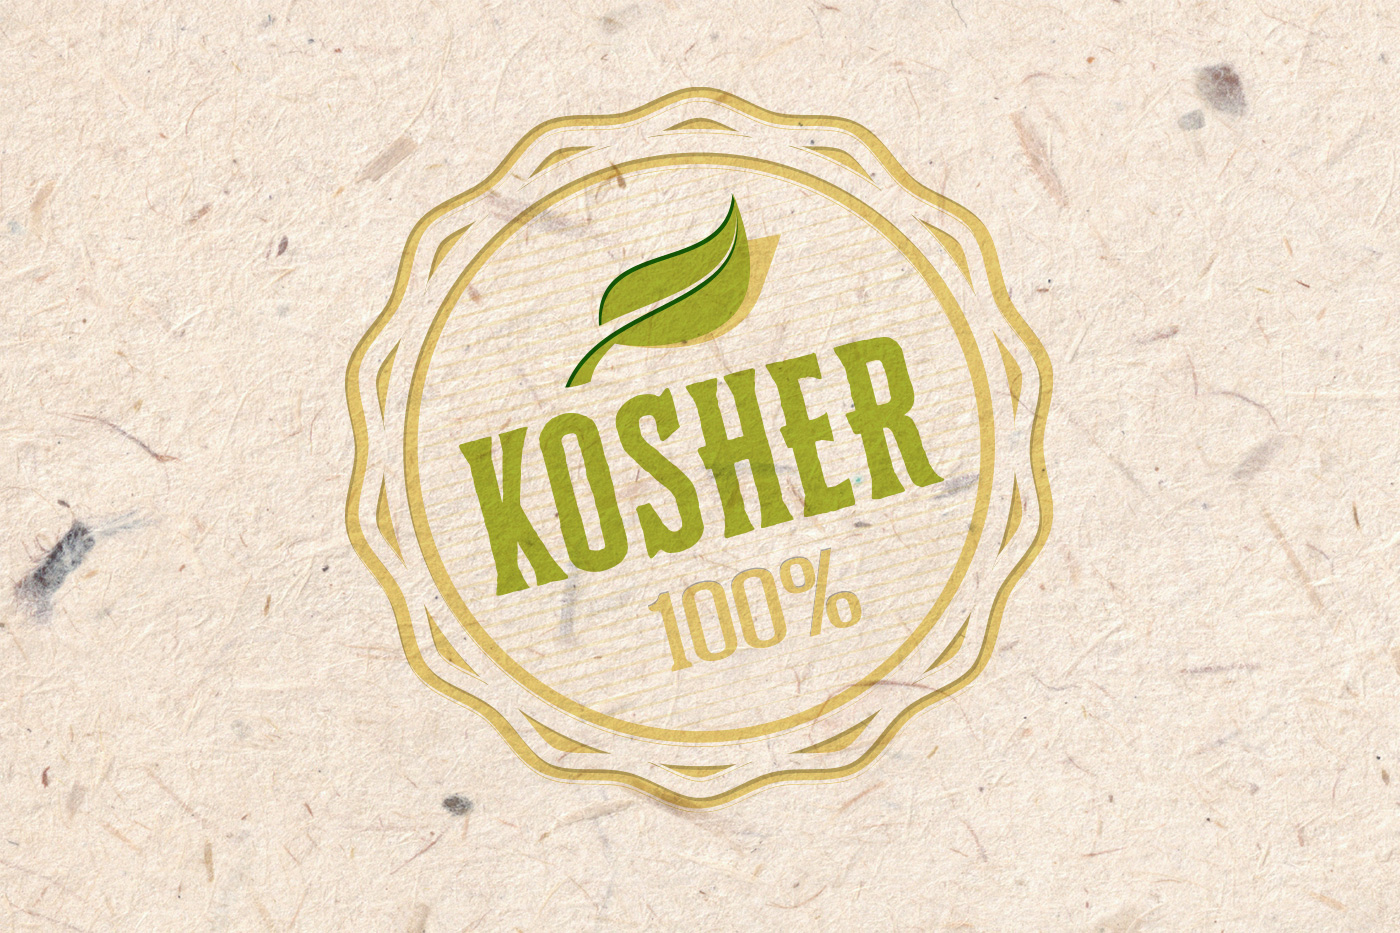 What Constitutes Kosher Produce?